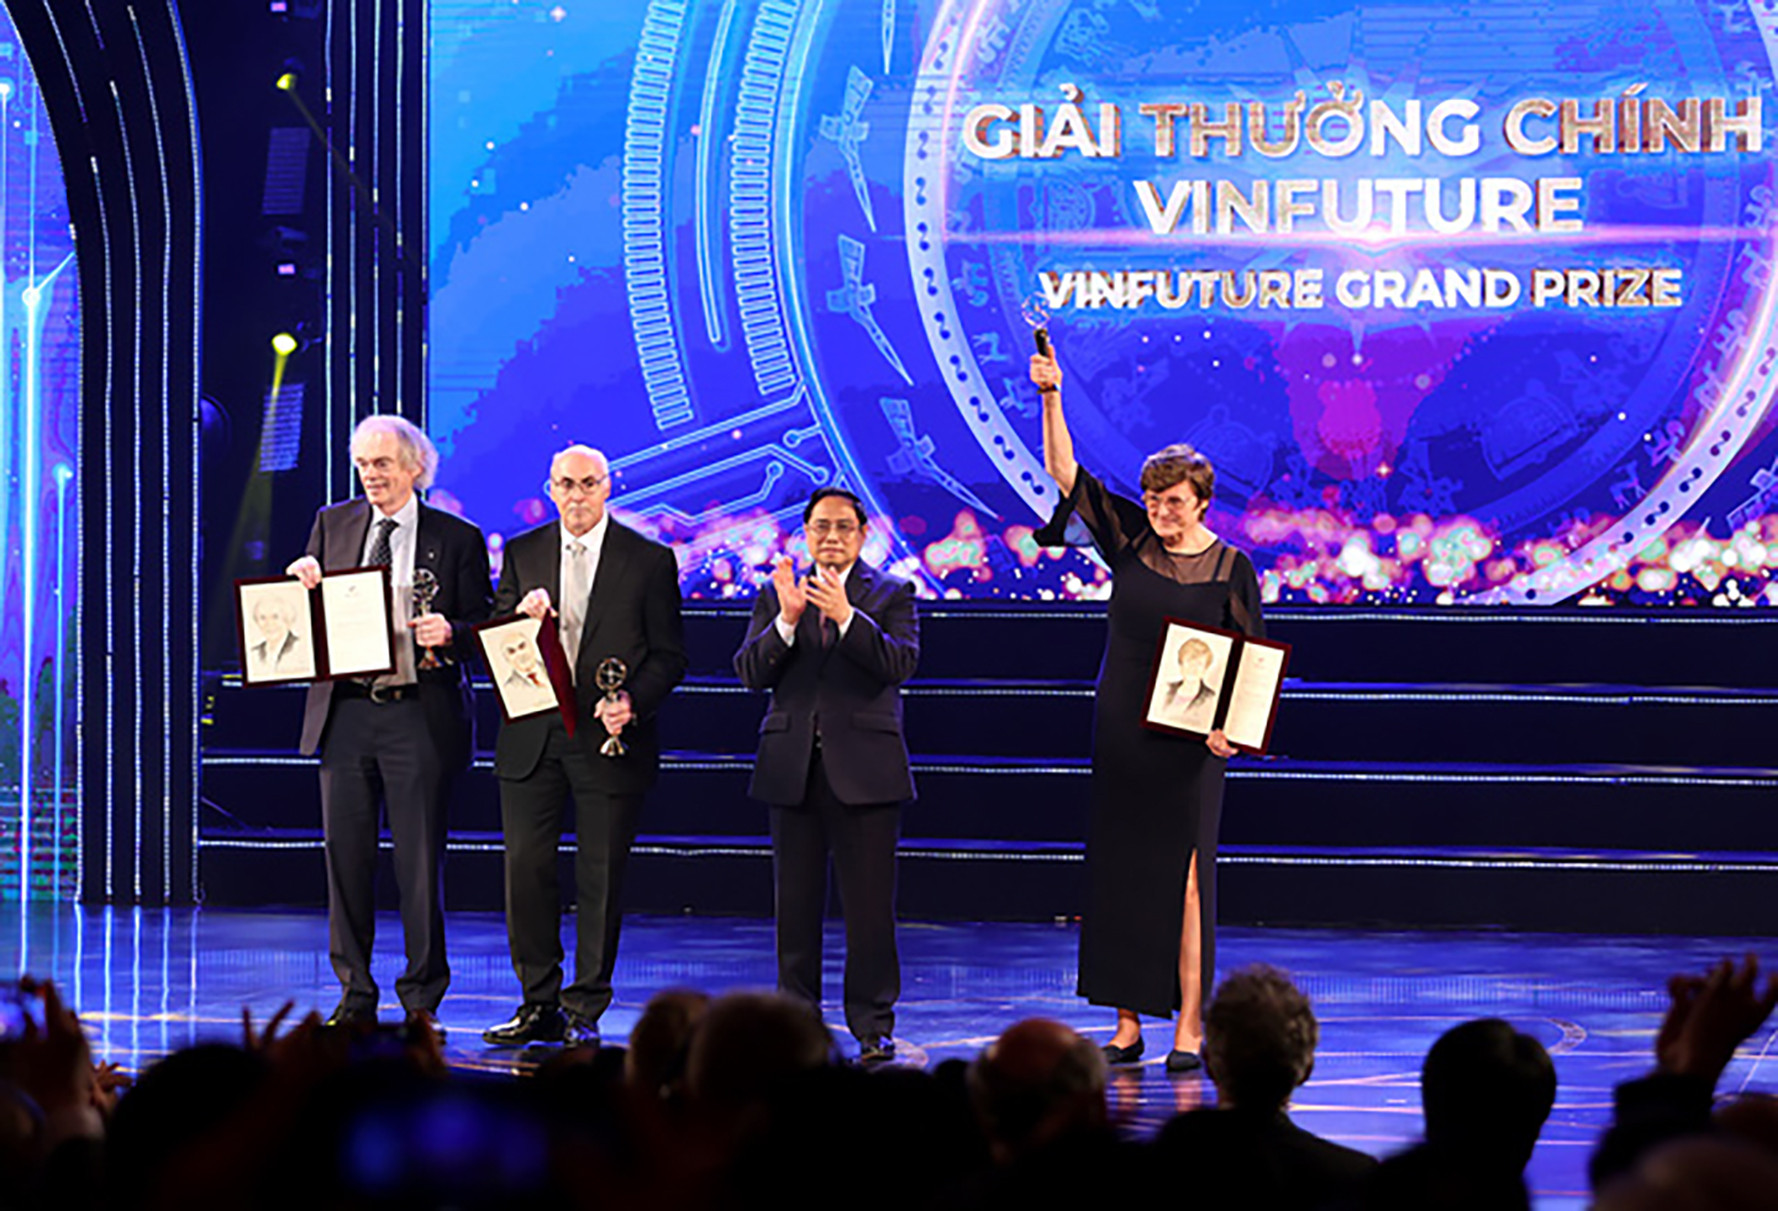 Quốc tế có cái nhìn mới về Việt Nam qua Giải thưởng Vinfuture. Ảnh: Nhật Bắc/Baochinhphu